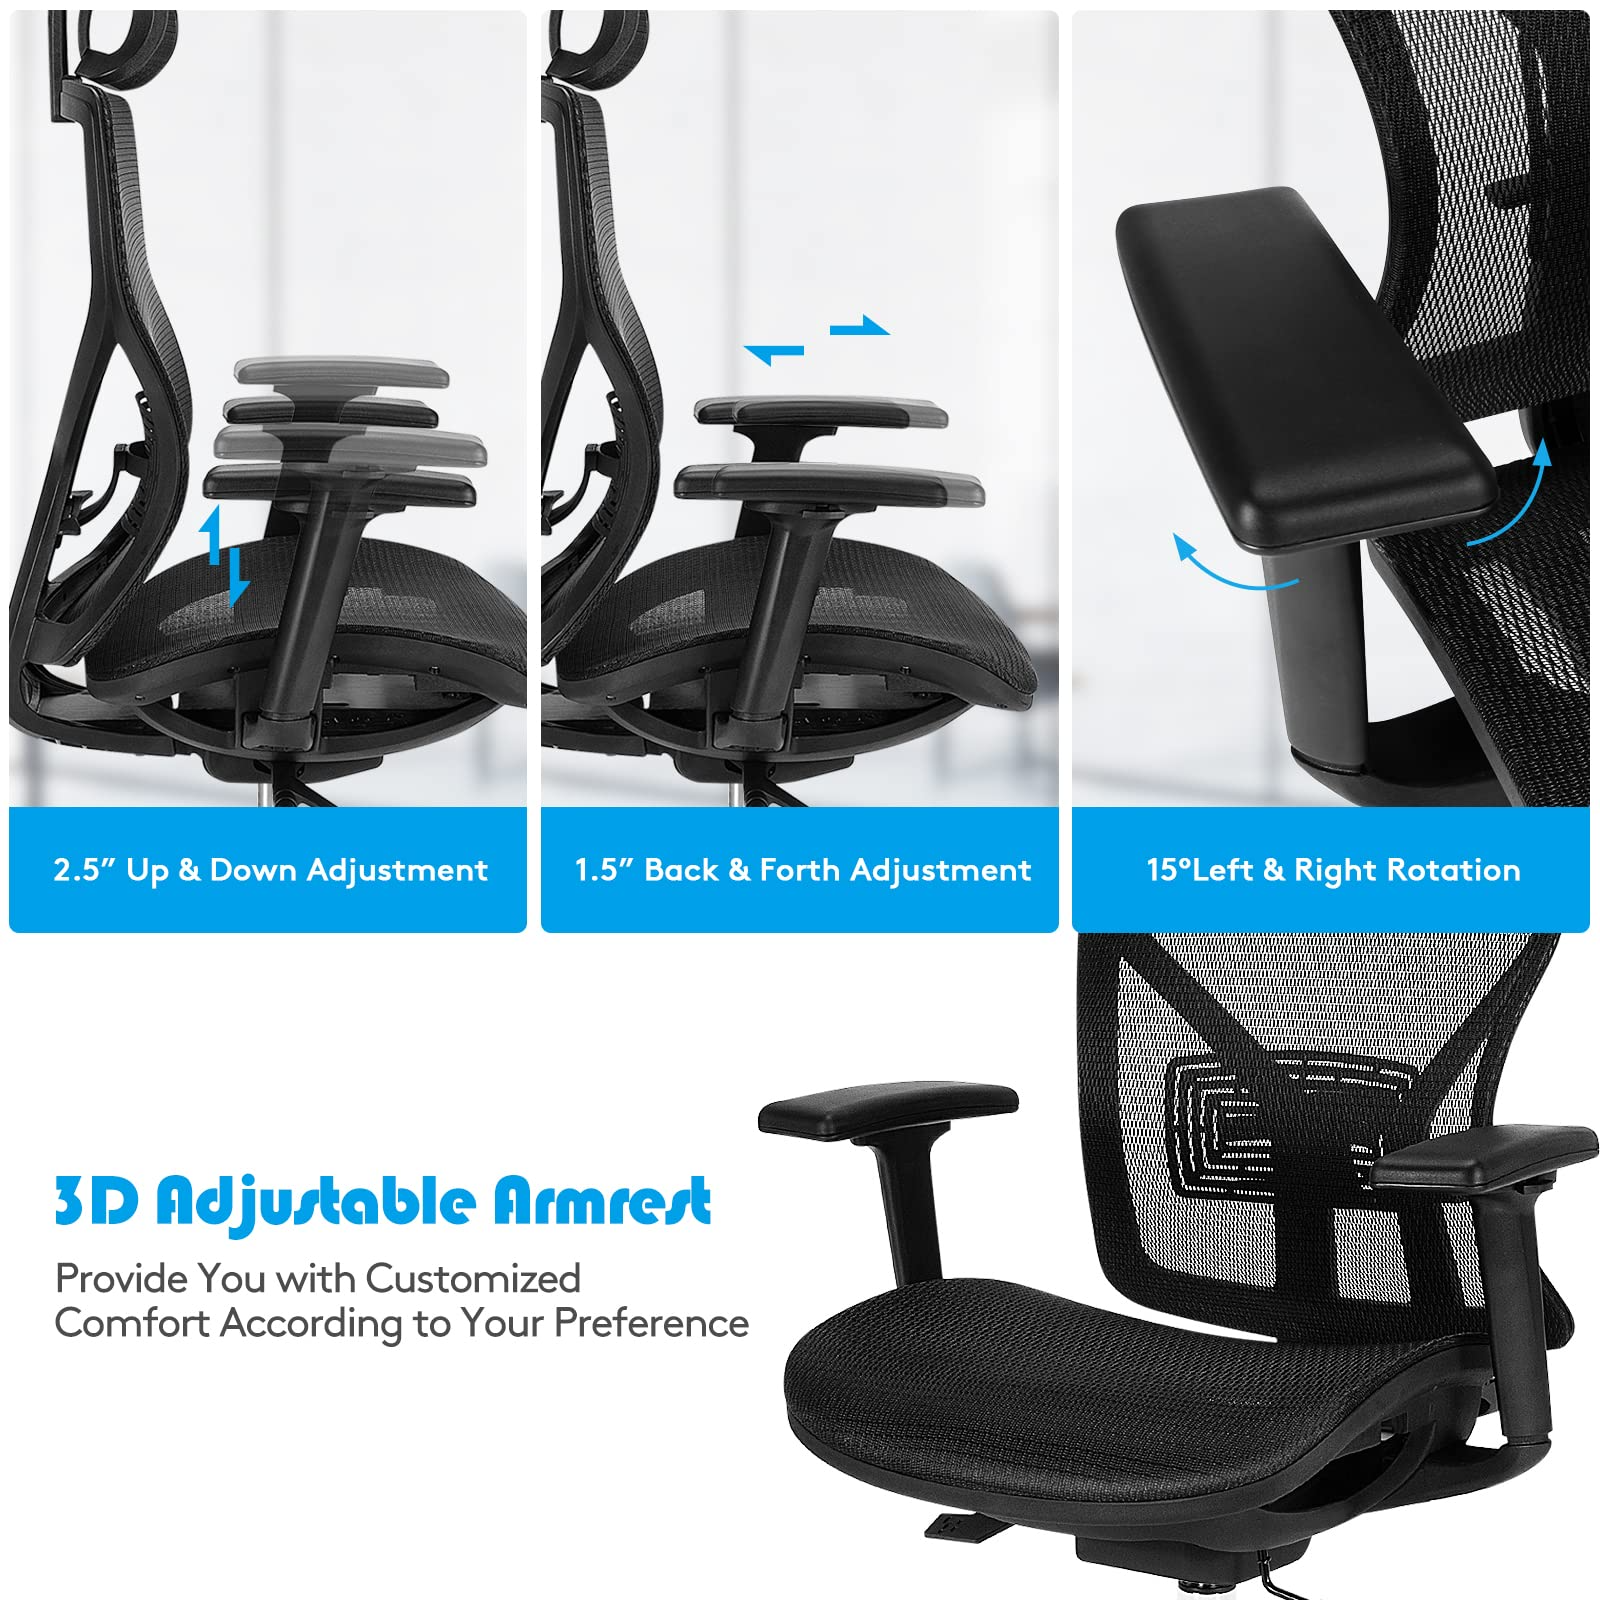 Giantex High-Back Mesh Executive Chair, with Adjustable Headrest, 3D Armrest, Lumbar Support, Reclining Backrest